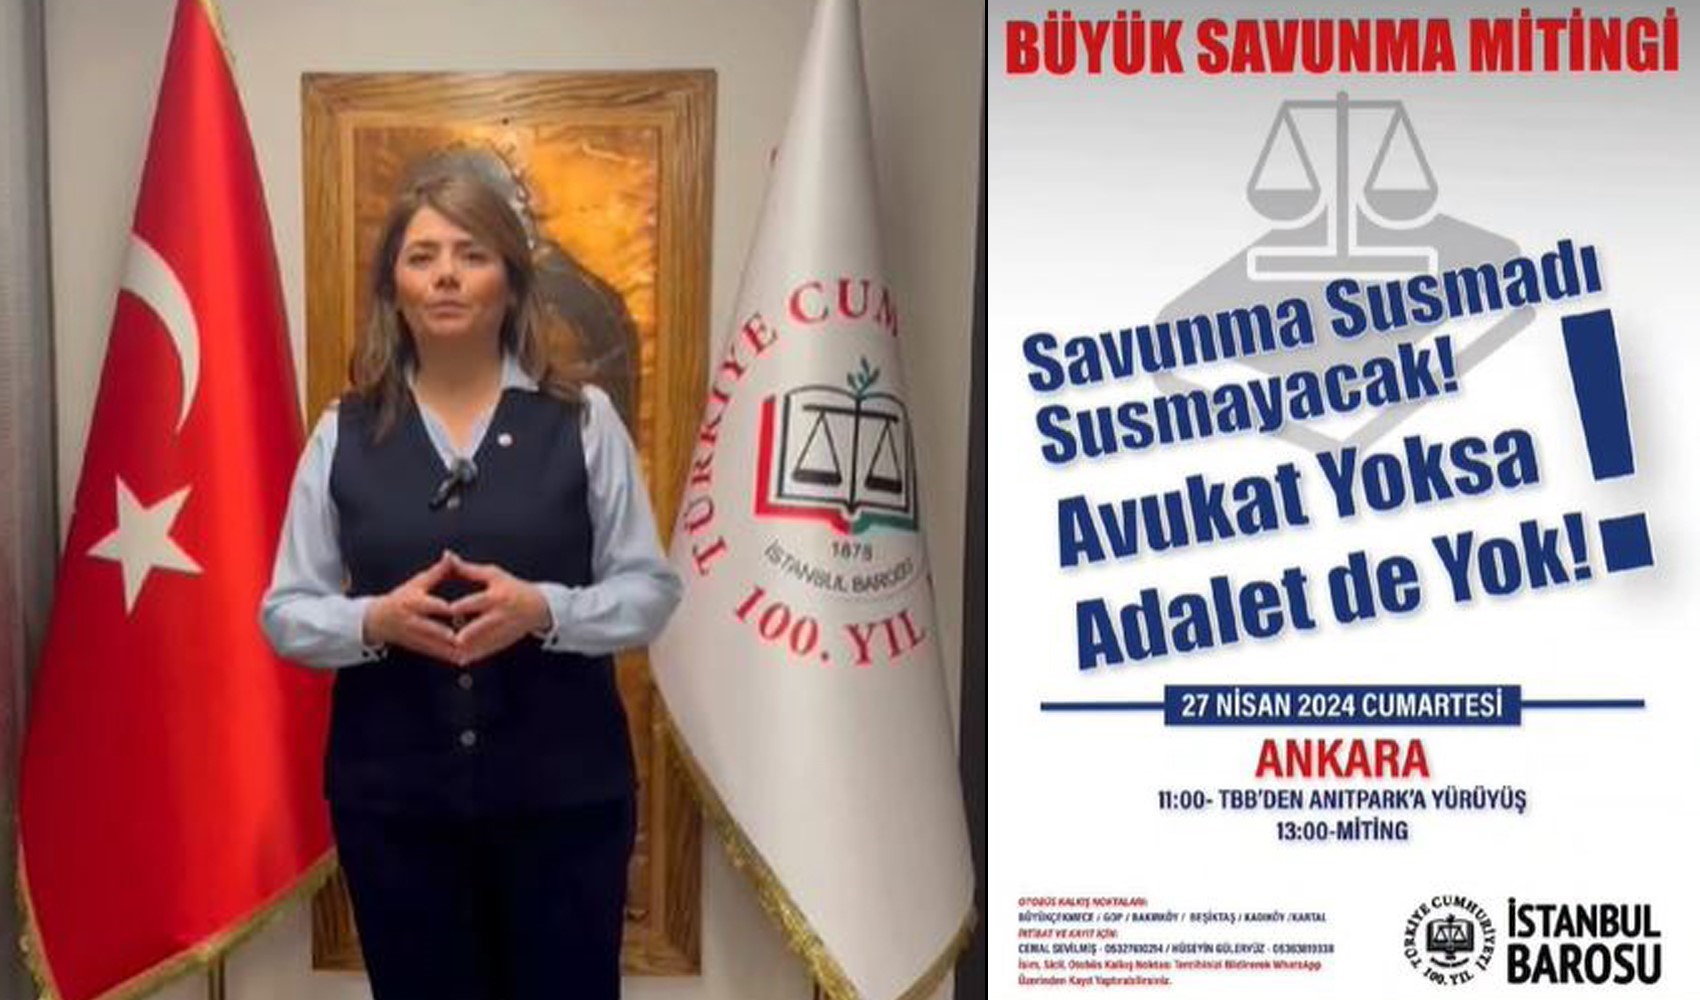 İstanbul Barosu Başkanı Filiz Saraç'tan çağrı: Avukatlar Büyük Savunma Mitingi'ne hazırlanıyor